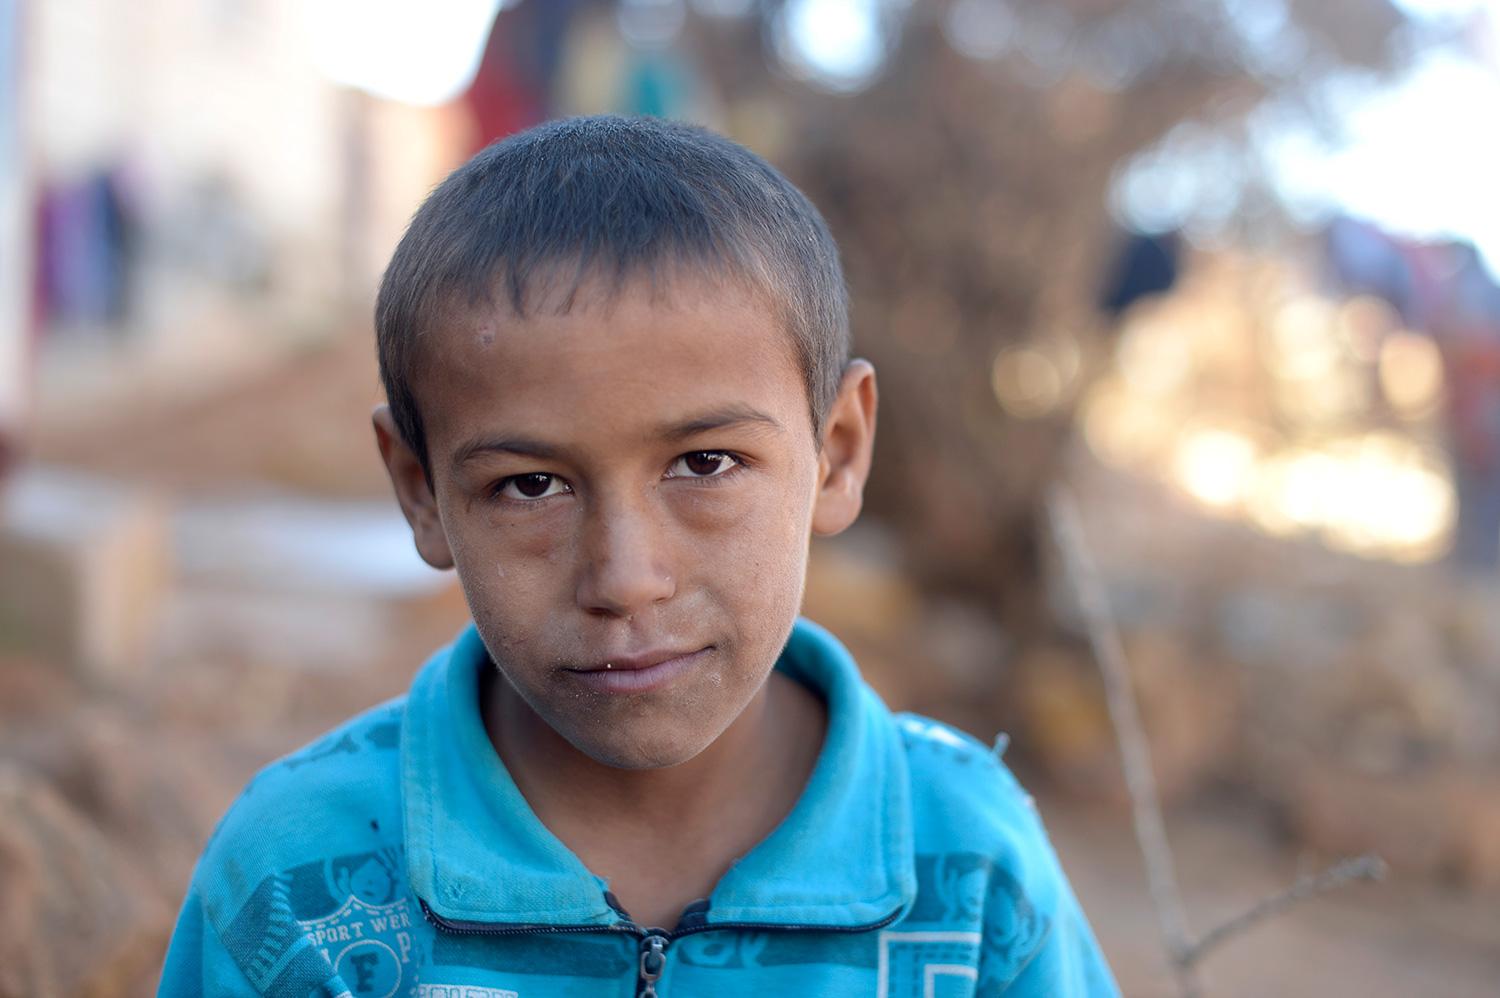 Vad drömmer du om? Mohammed, 8: Att det blir fred, att jag får åka hem till Syrien och att bli officer.